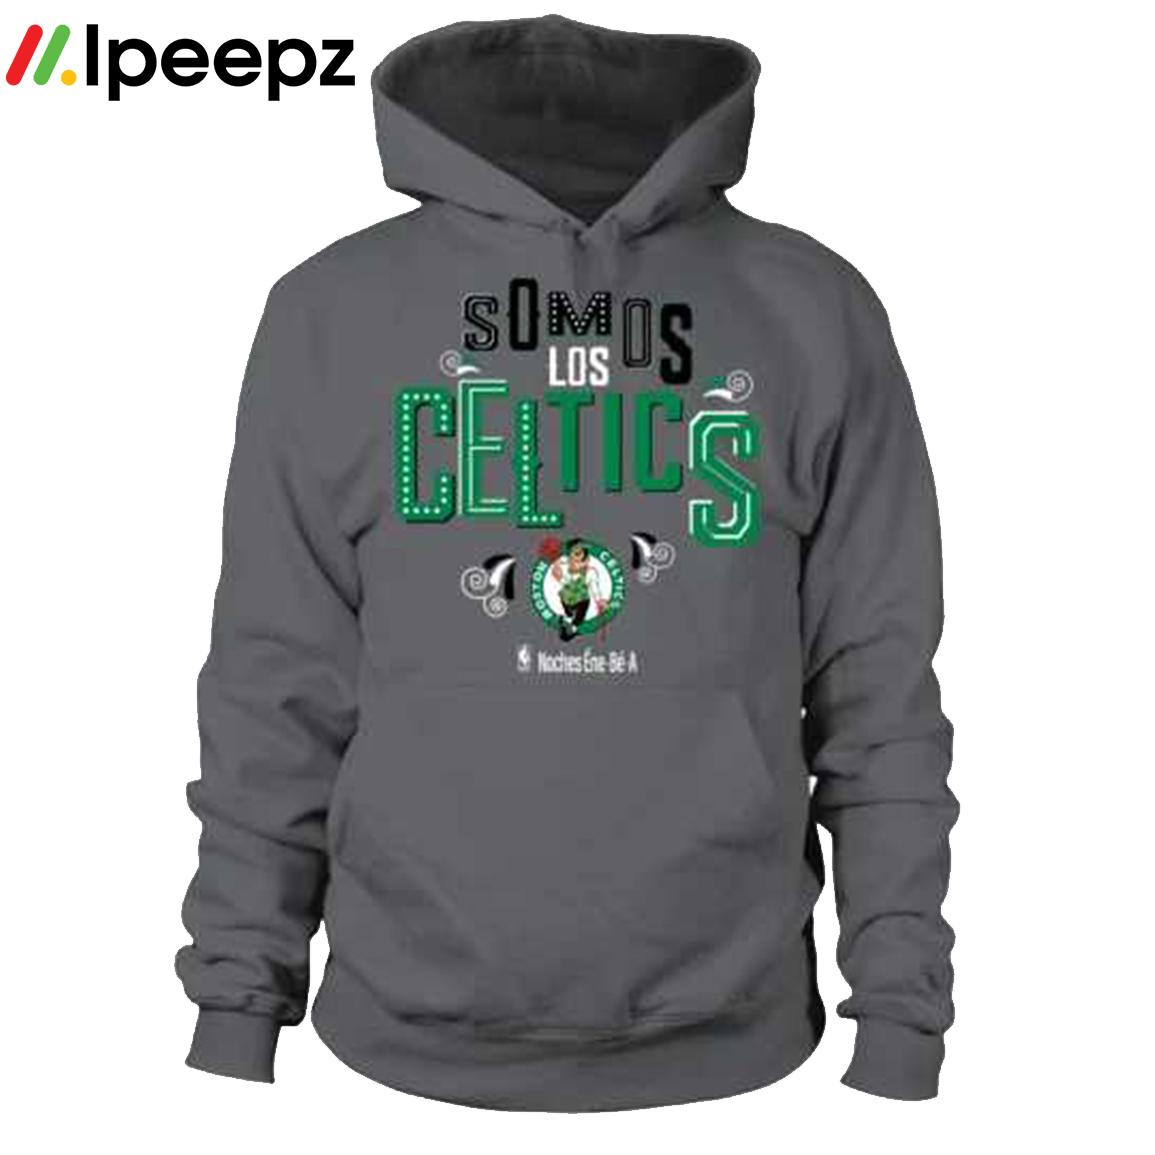 Somos Los Boston Celtics Noches enebea shirt, hoodie, sweater